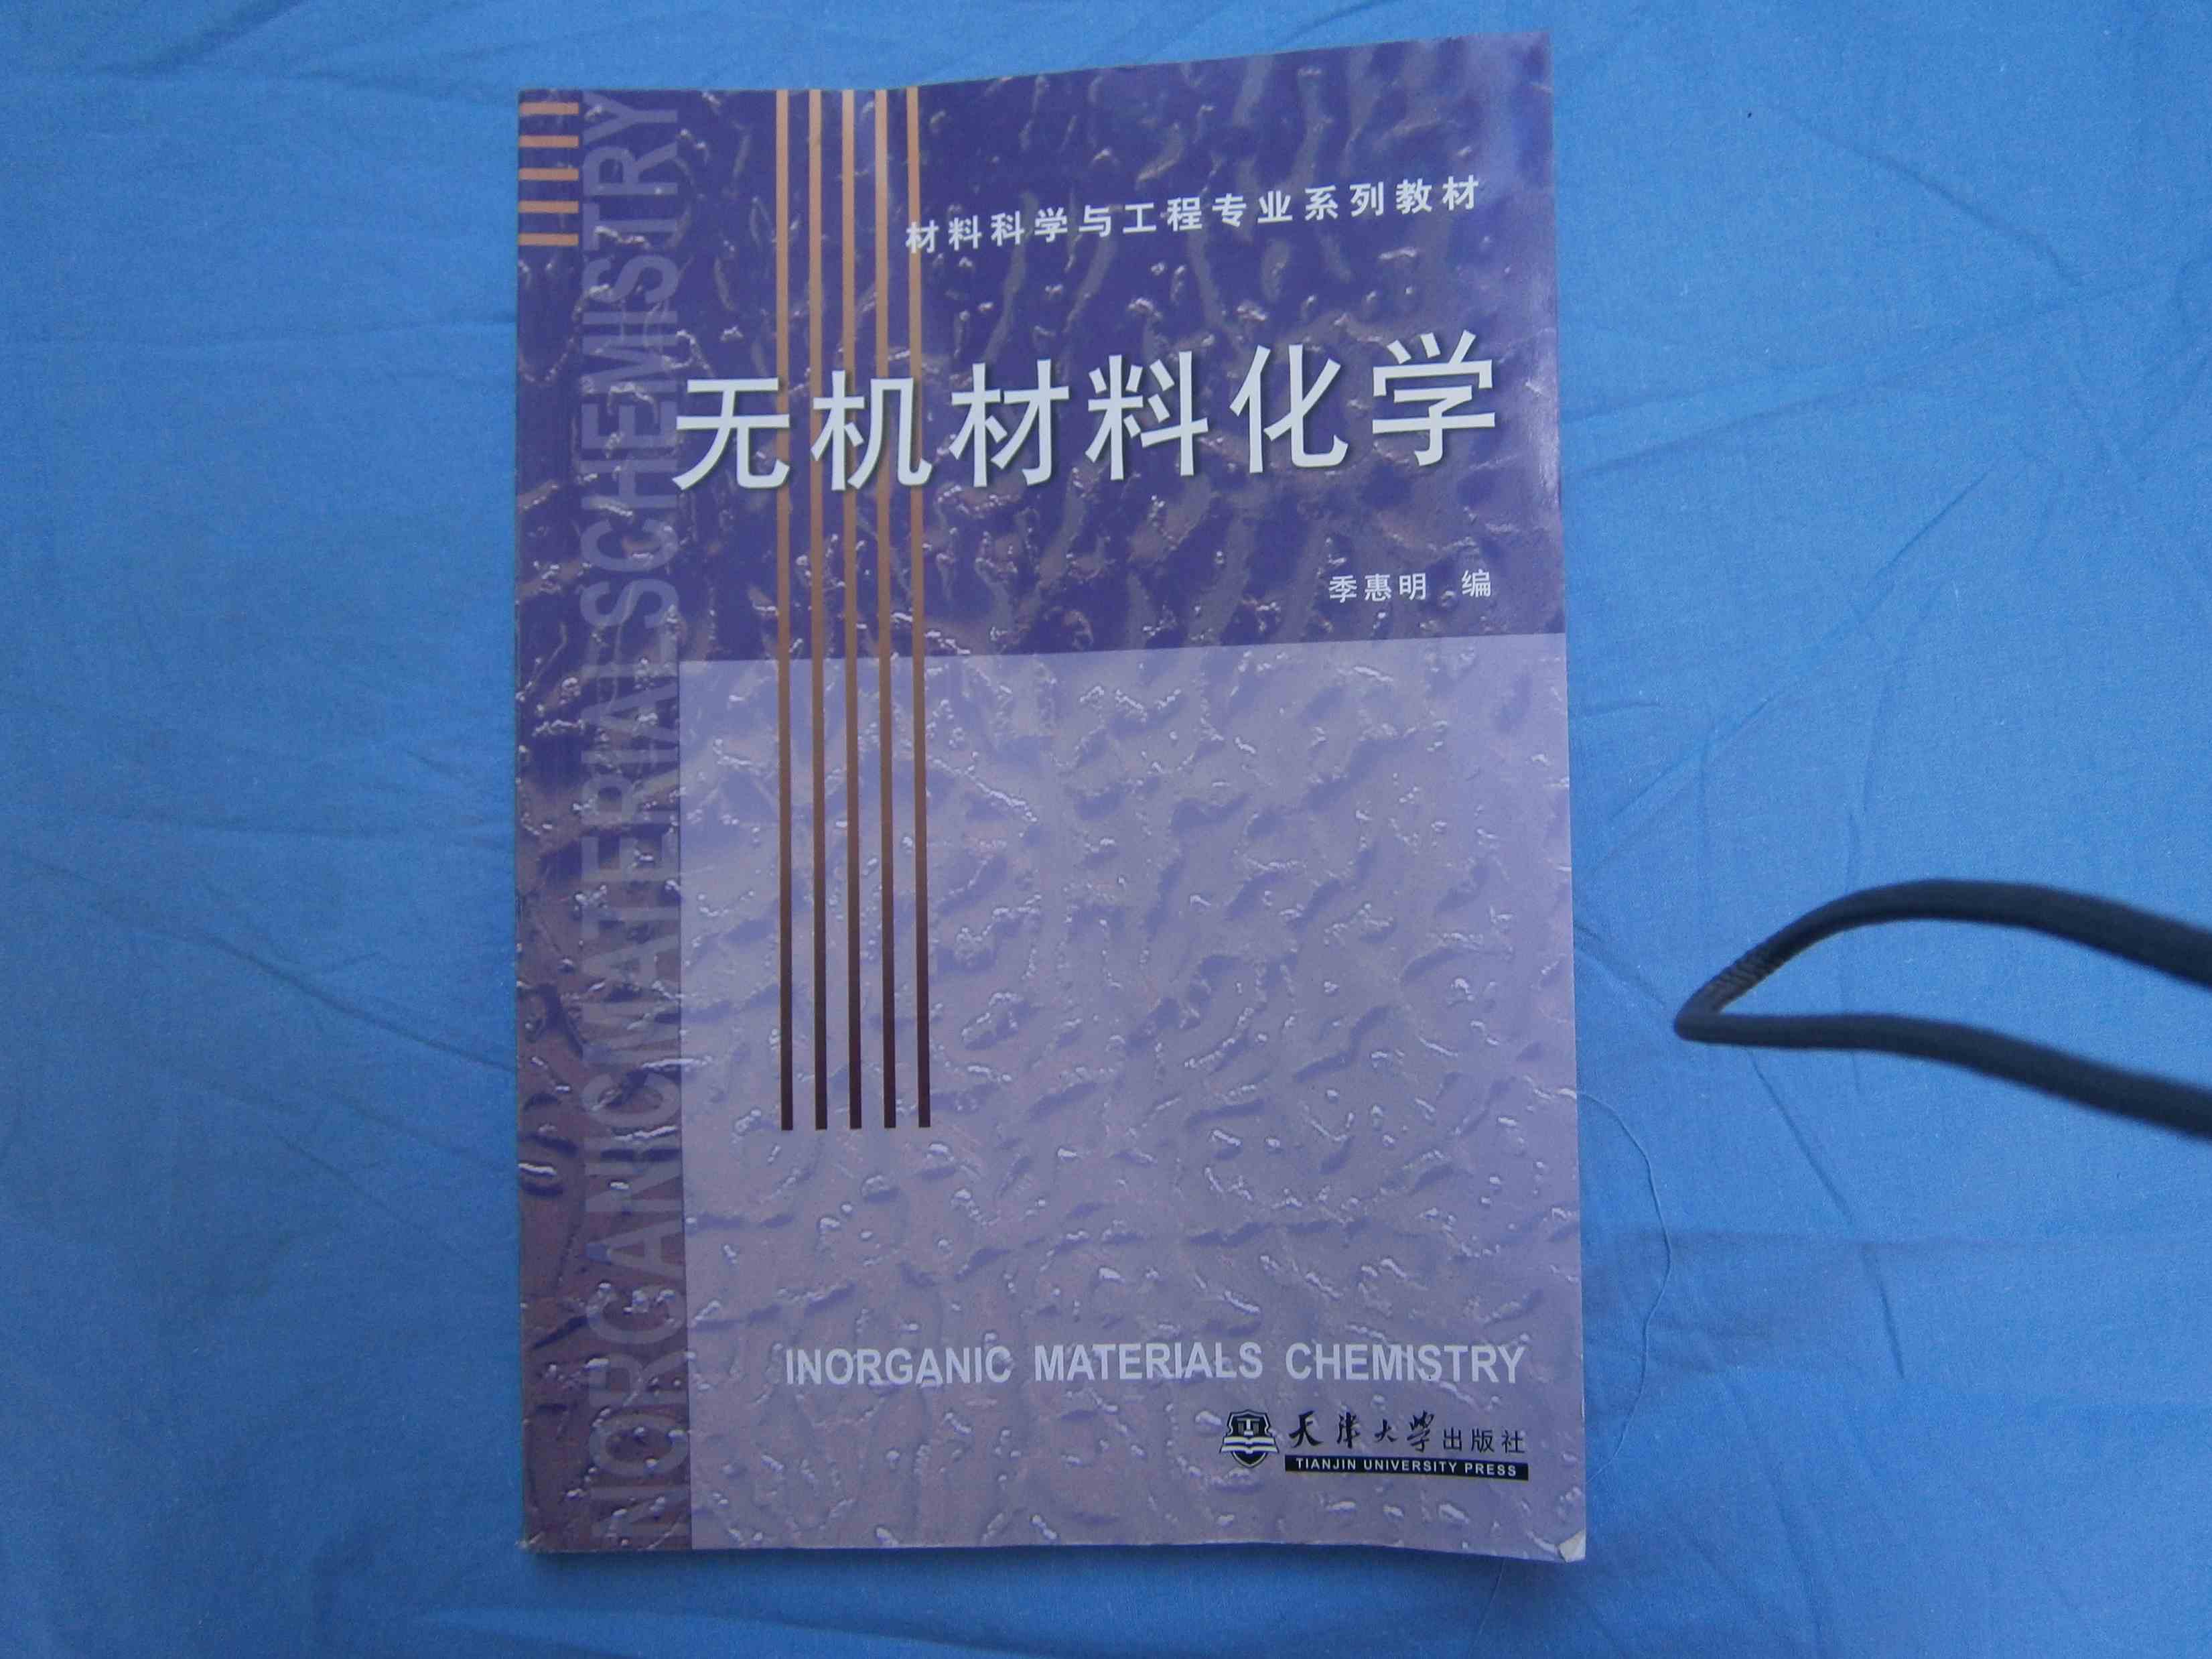 無機材料化學(天津大學出版社)